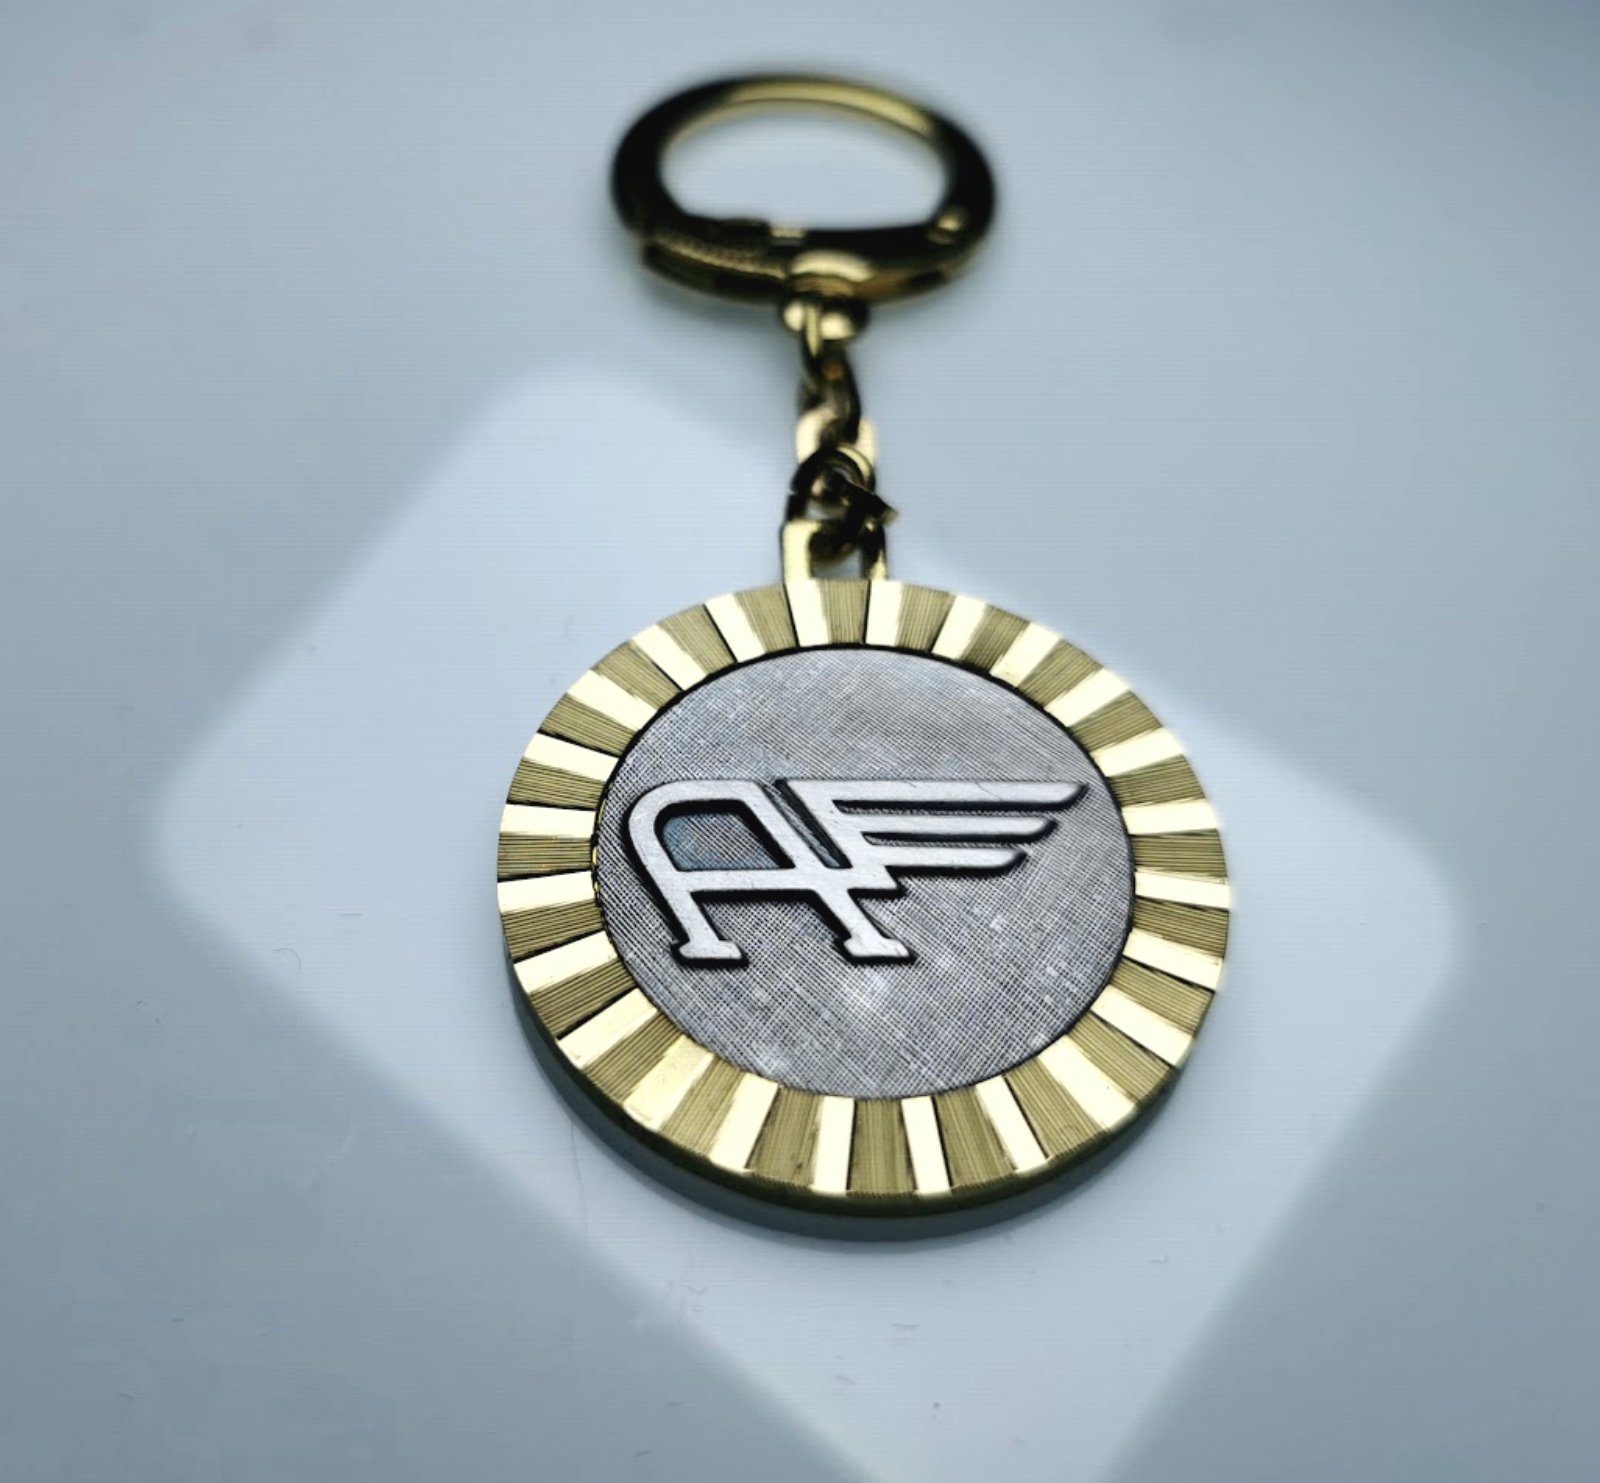 Co. Schlüsselanhänger Schlüsselsammler aus HR AUSTIN Metall 1954 Diamantschliff Autocomfort Anhänger MOTOR